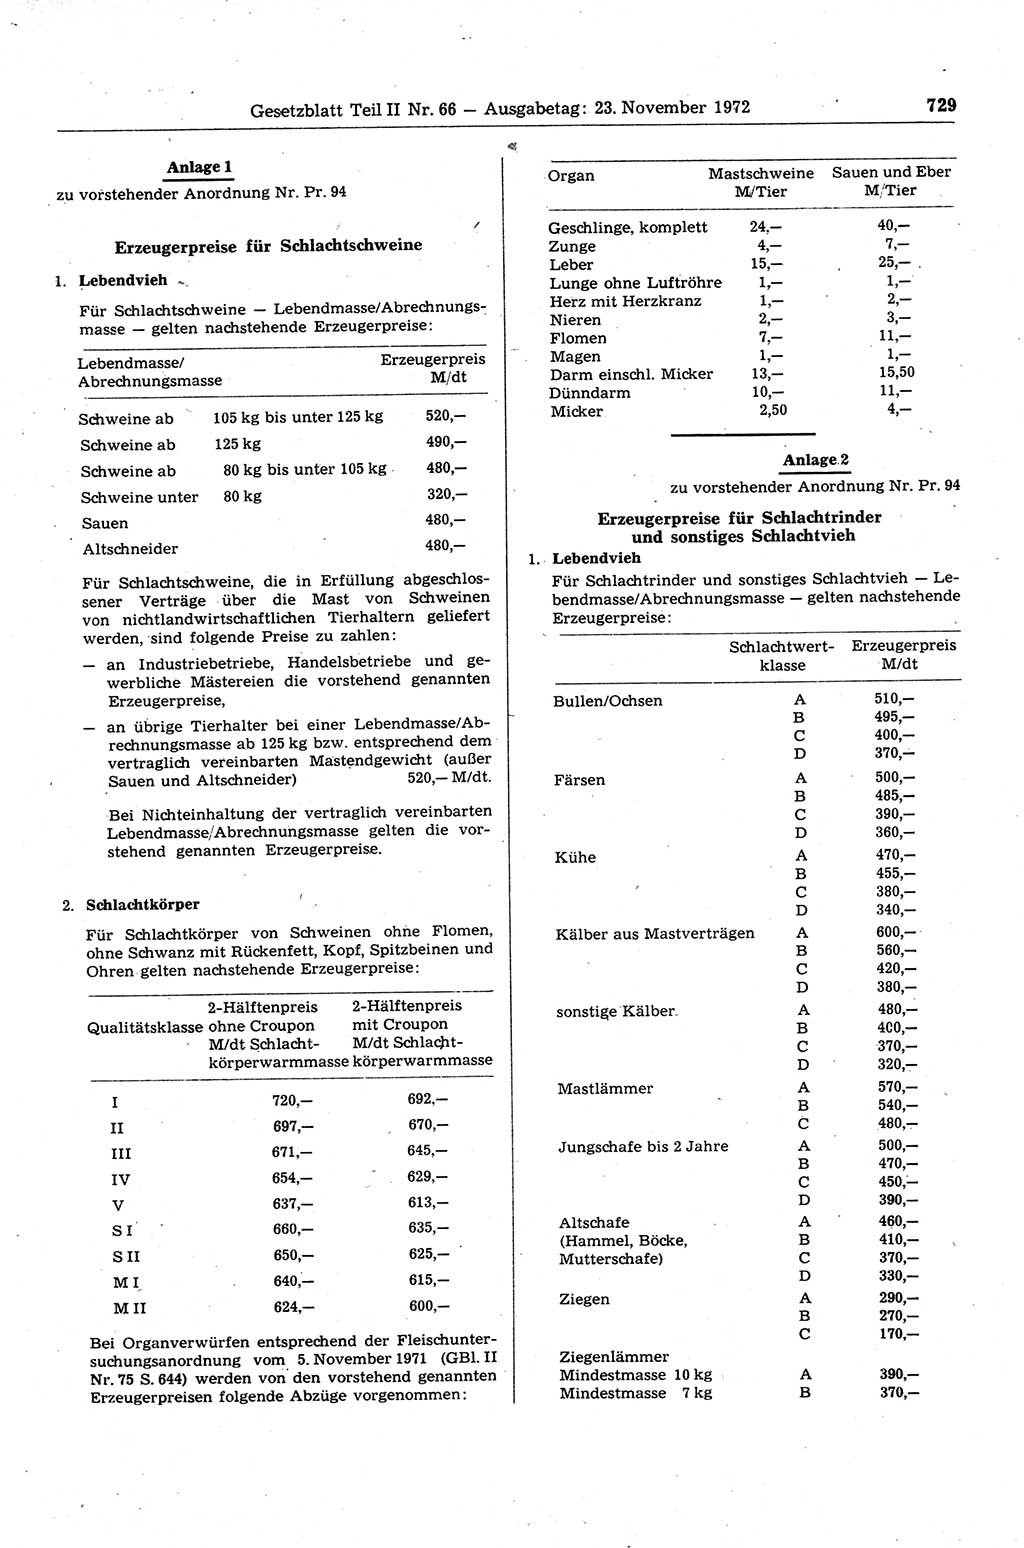 Gesetzblatt (GBl.) der Deutschen Demokratischen Republik (DDR) Teil ⅠⅠ 1972, Seite 729 (GBl. DDR ⅠⅠ 1972, S. 729)